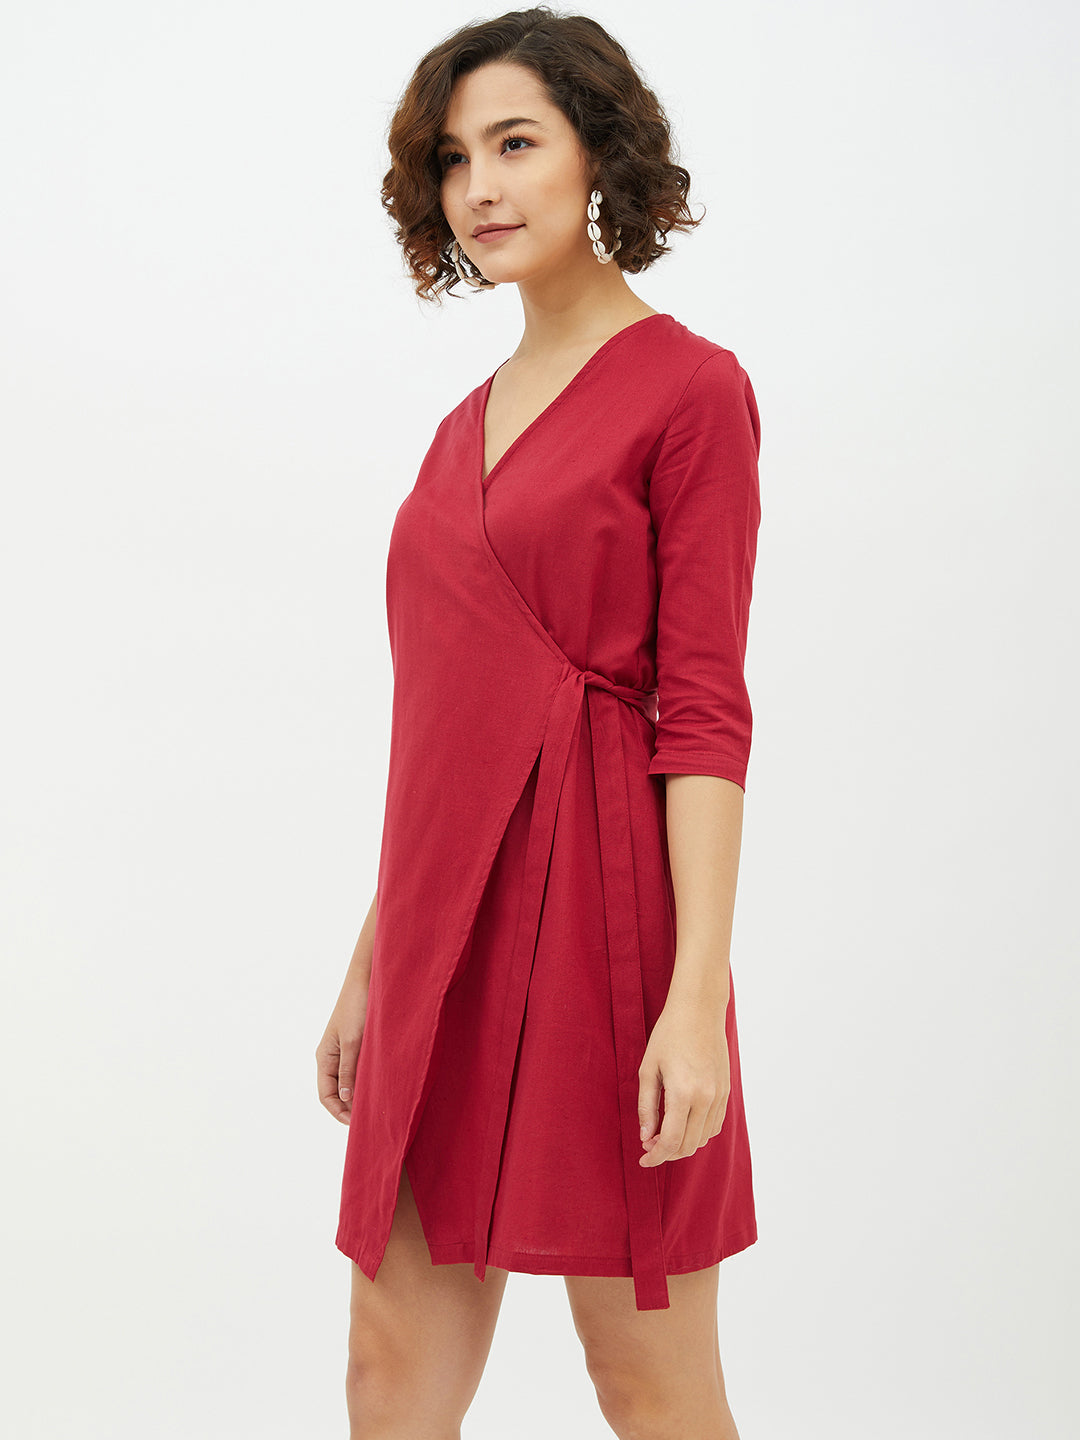 Women's Maroon Cotton Linen Wrap Dress - StyleStone